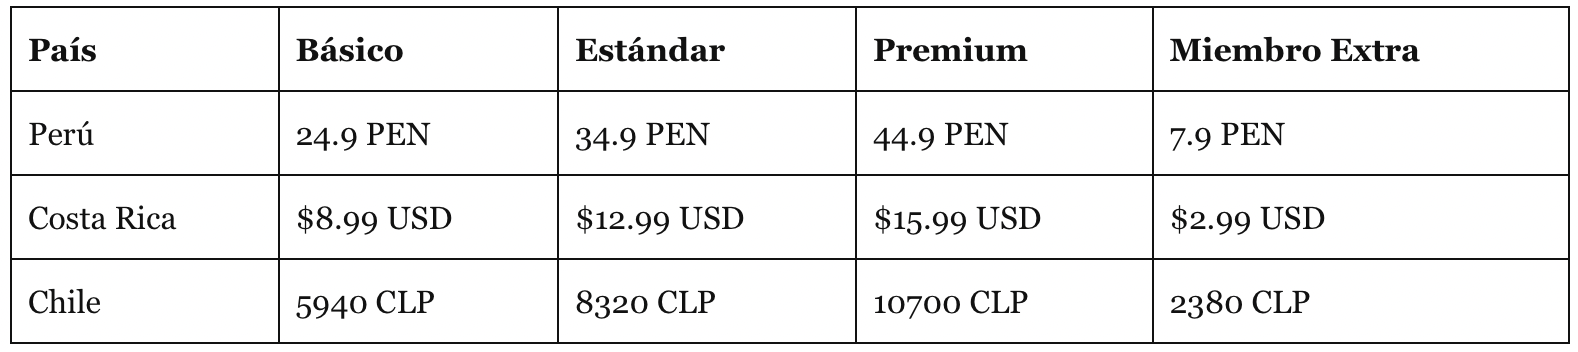 Tabela de preços no Peru, Costa Rica e Chile da Netflix.  (foto: Variedade)